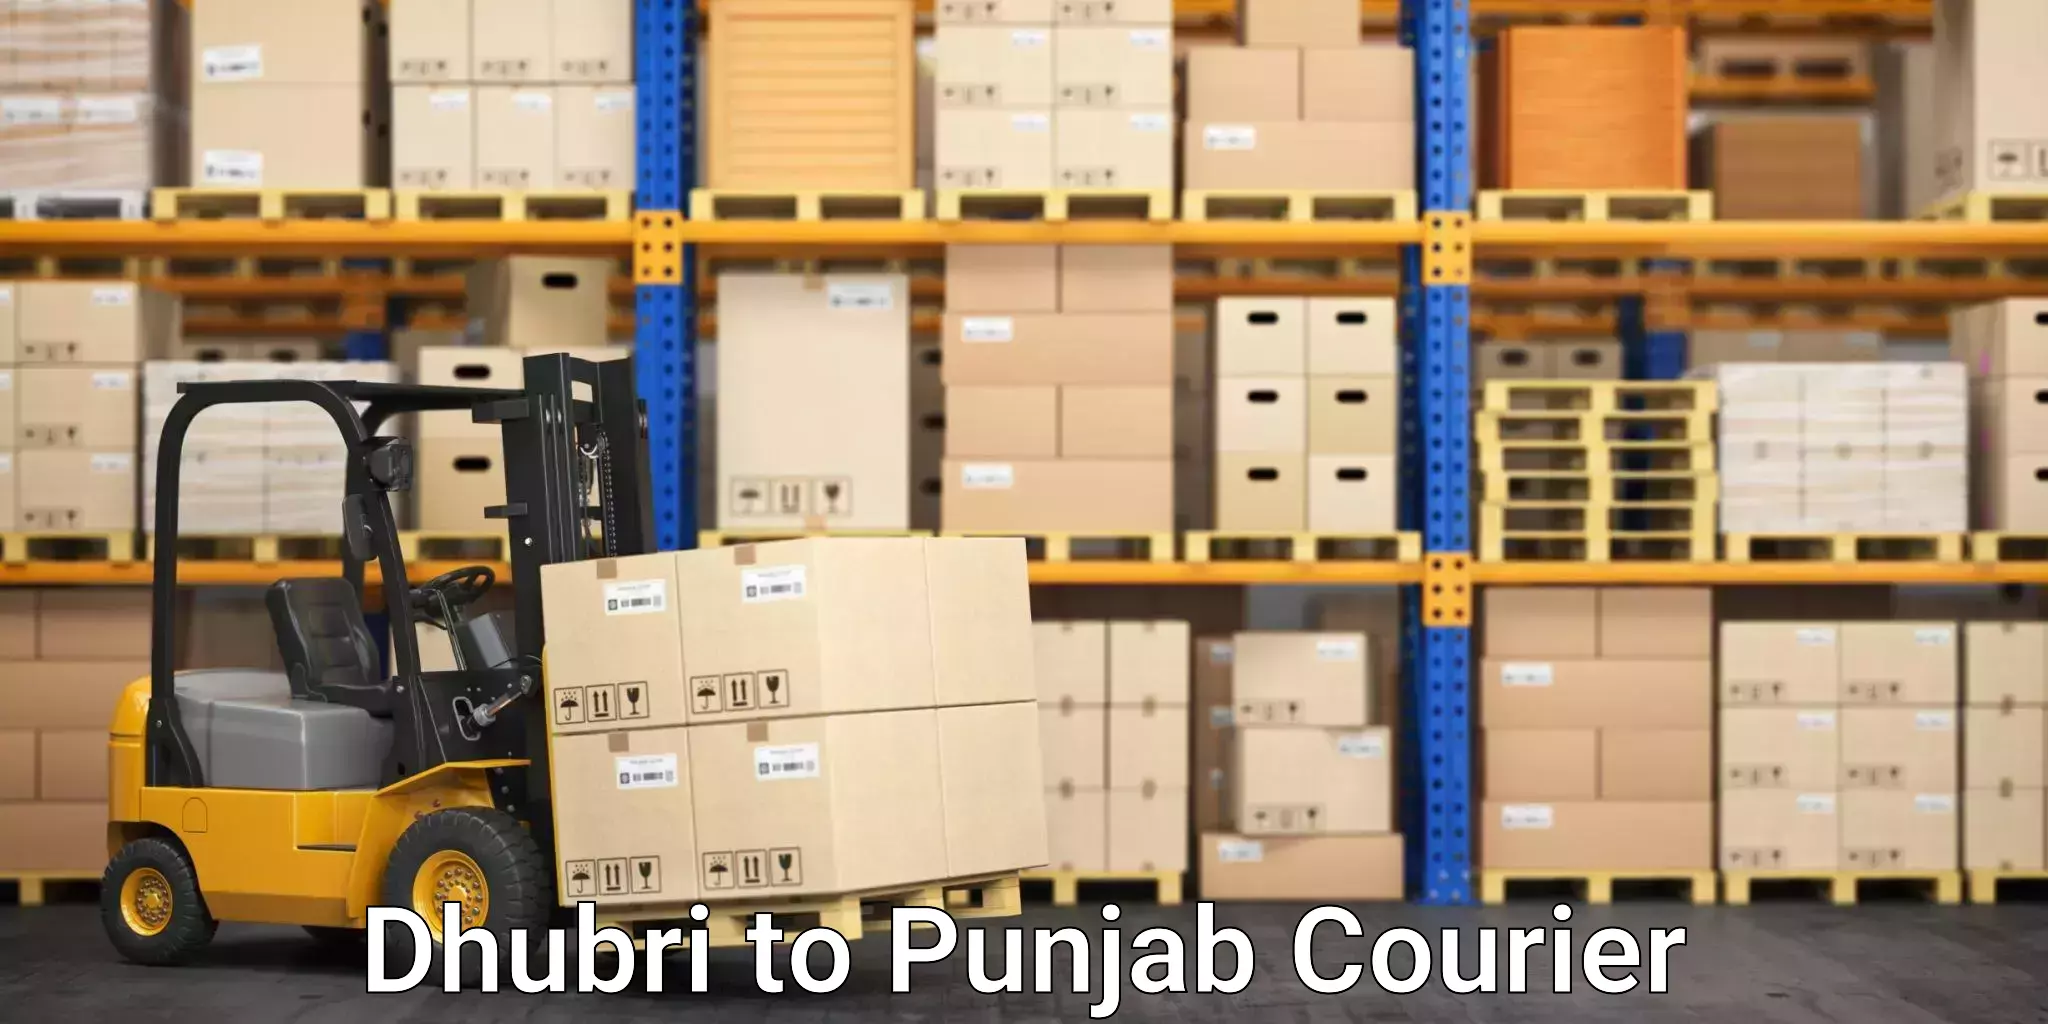 Tech-enabled shipping Dhubri to Punjab